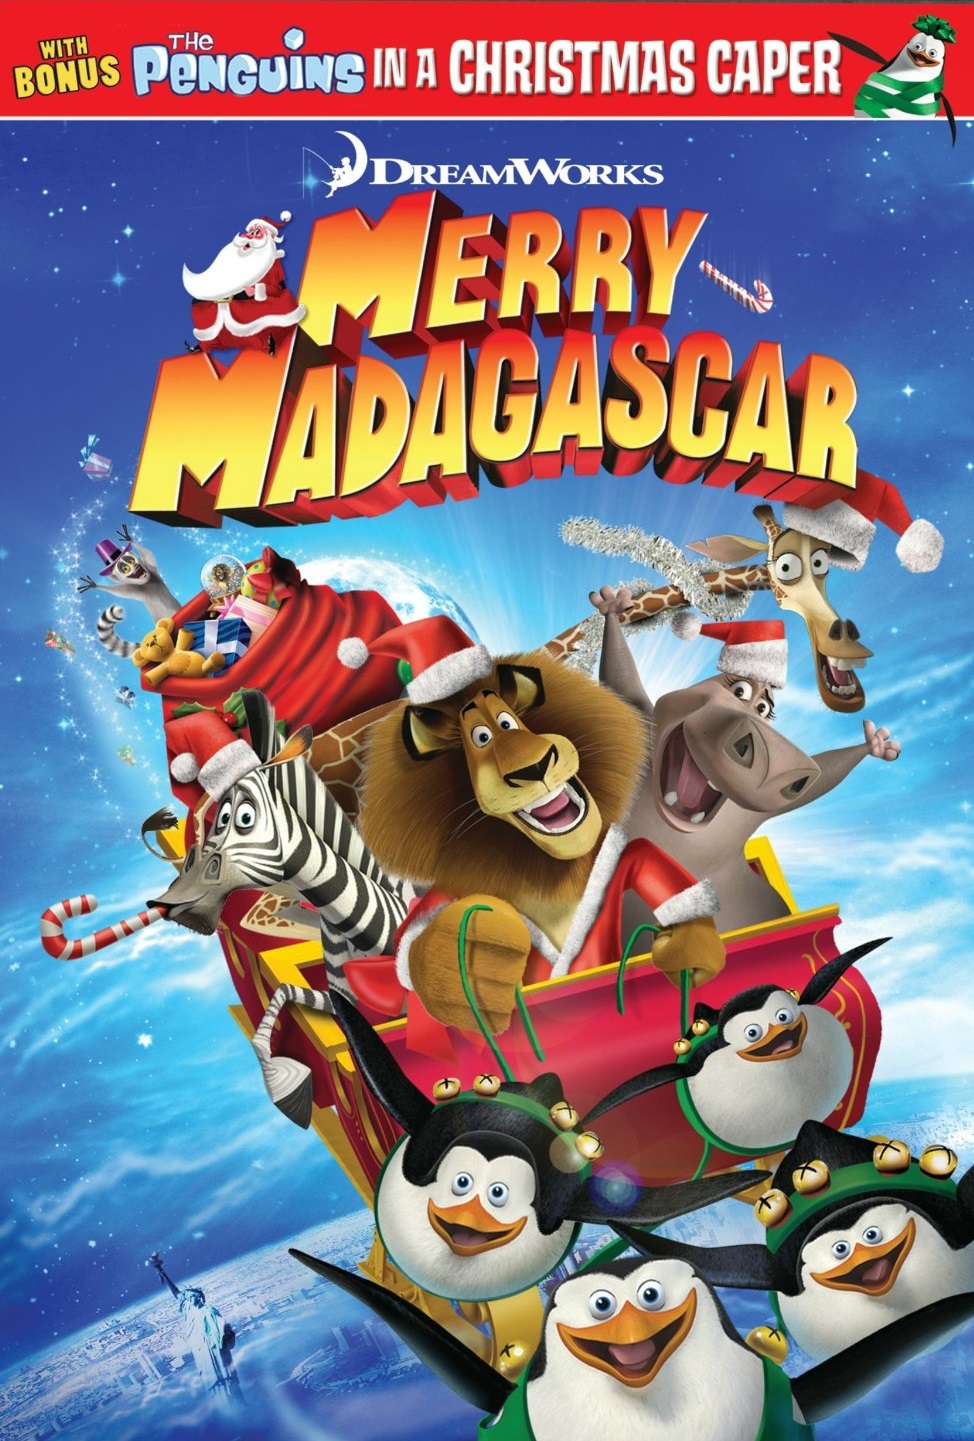  فیلم سینمایی Merry Madagascar به کارگردانی دیوید سورن